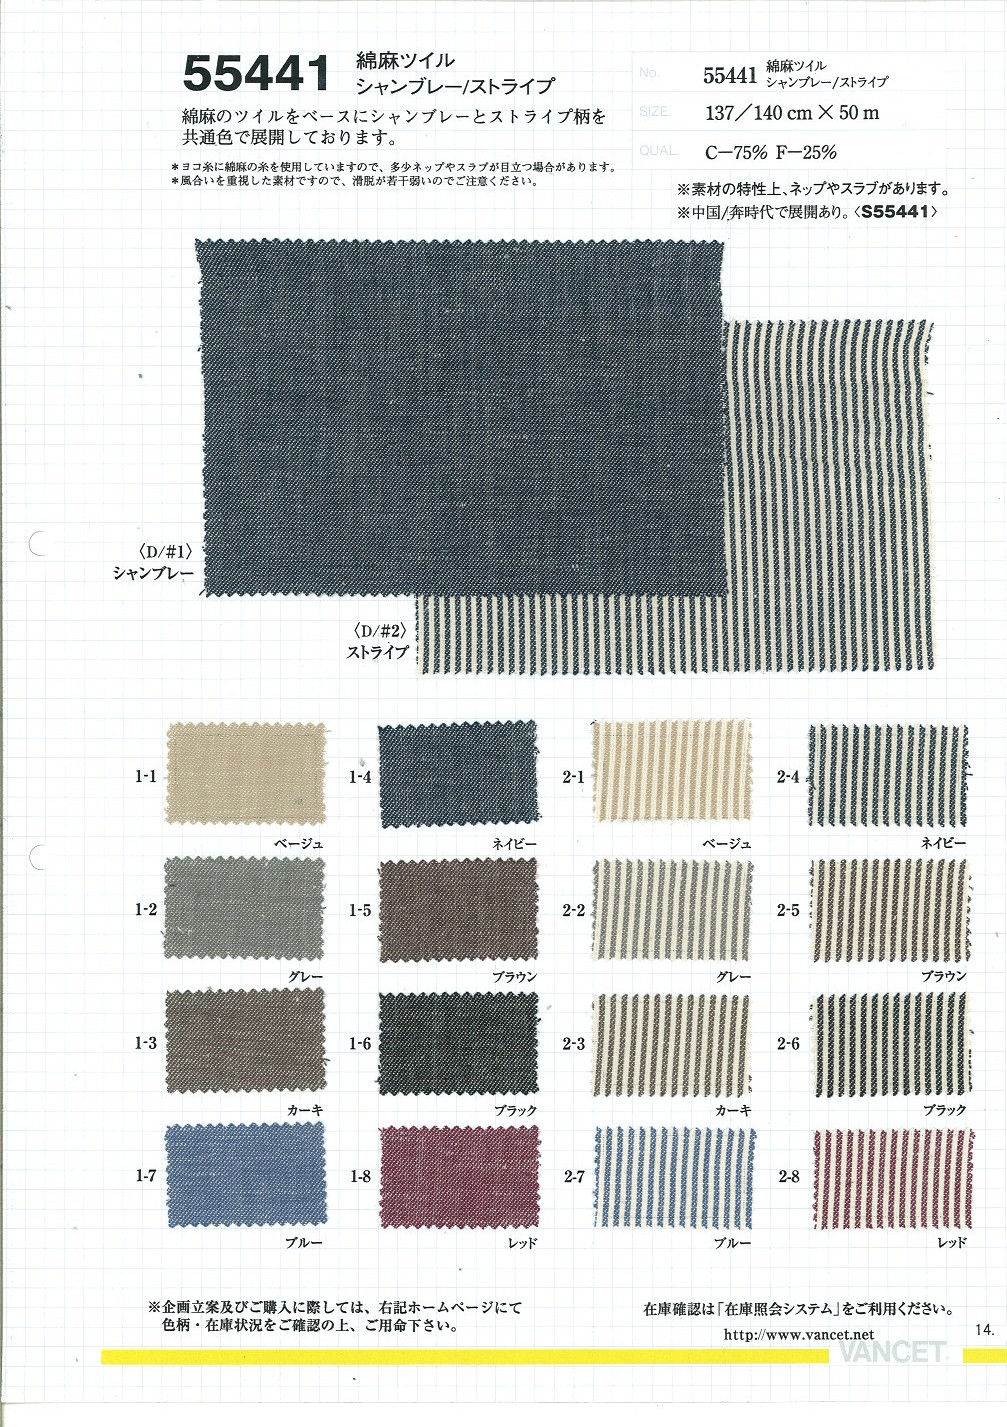 55441 Lino Lino Sarga Chambray/raya[Fabrica Textil] VANCET